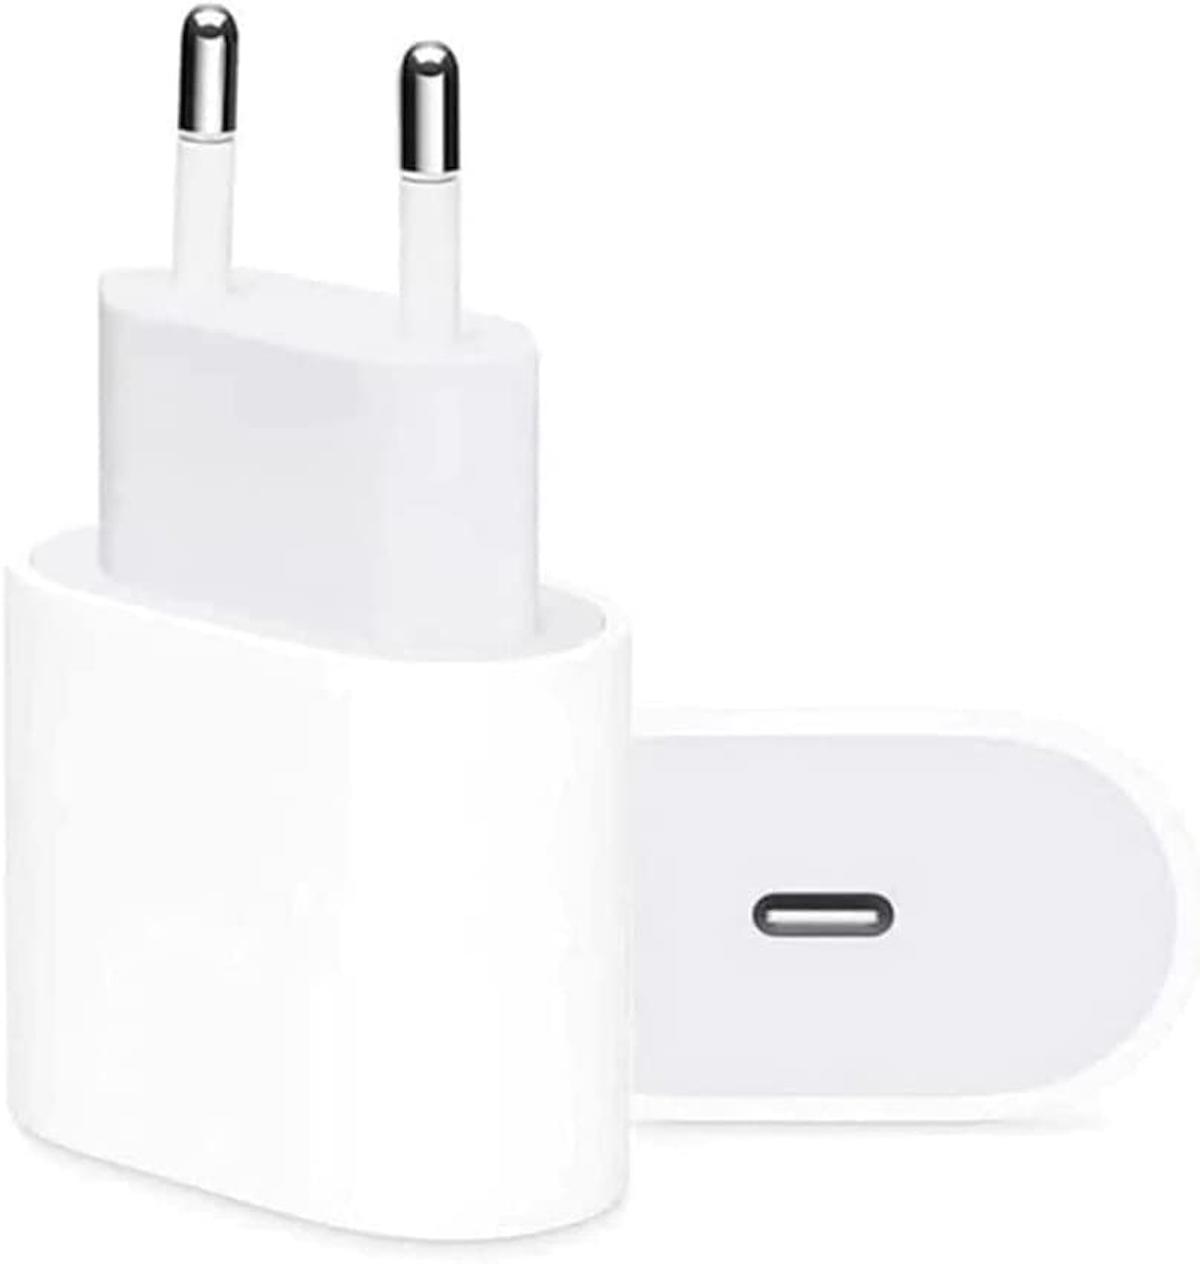 Apple Mhje3tu/a iPhone USB Kablolu 5 W 1 Amper Şarj Aleti Beyaz